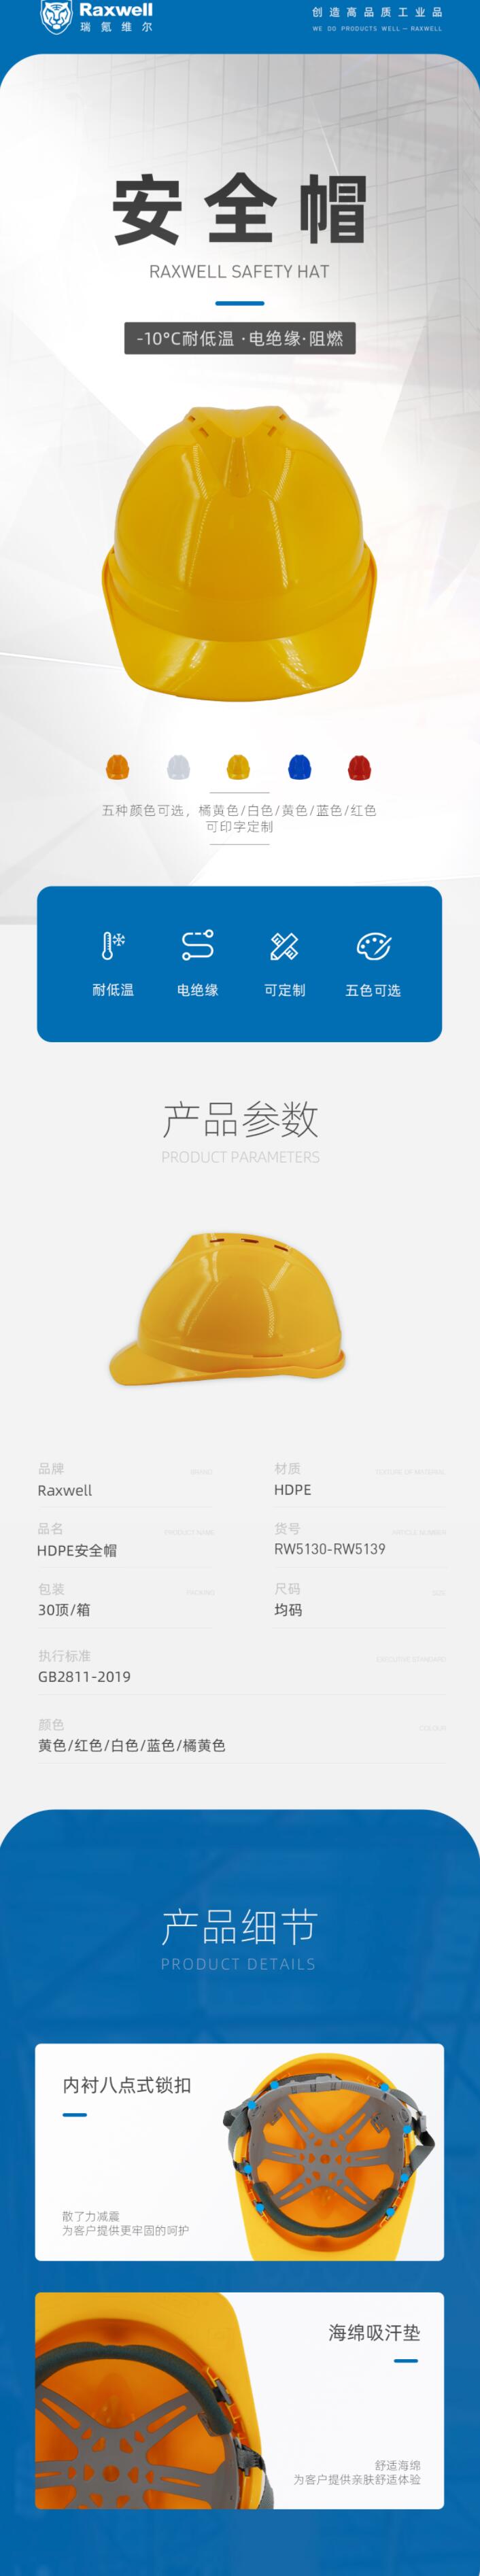 瑞氪维尔RW5134 HDPE带透气孔安全帽图片